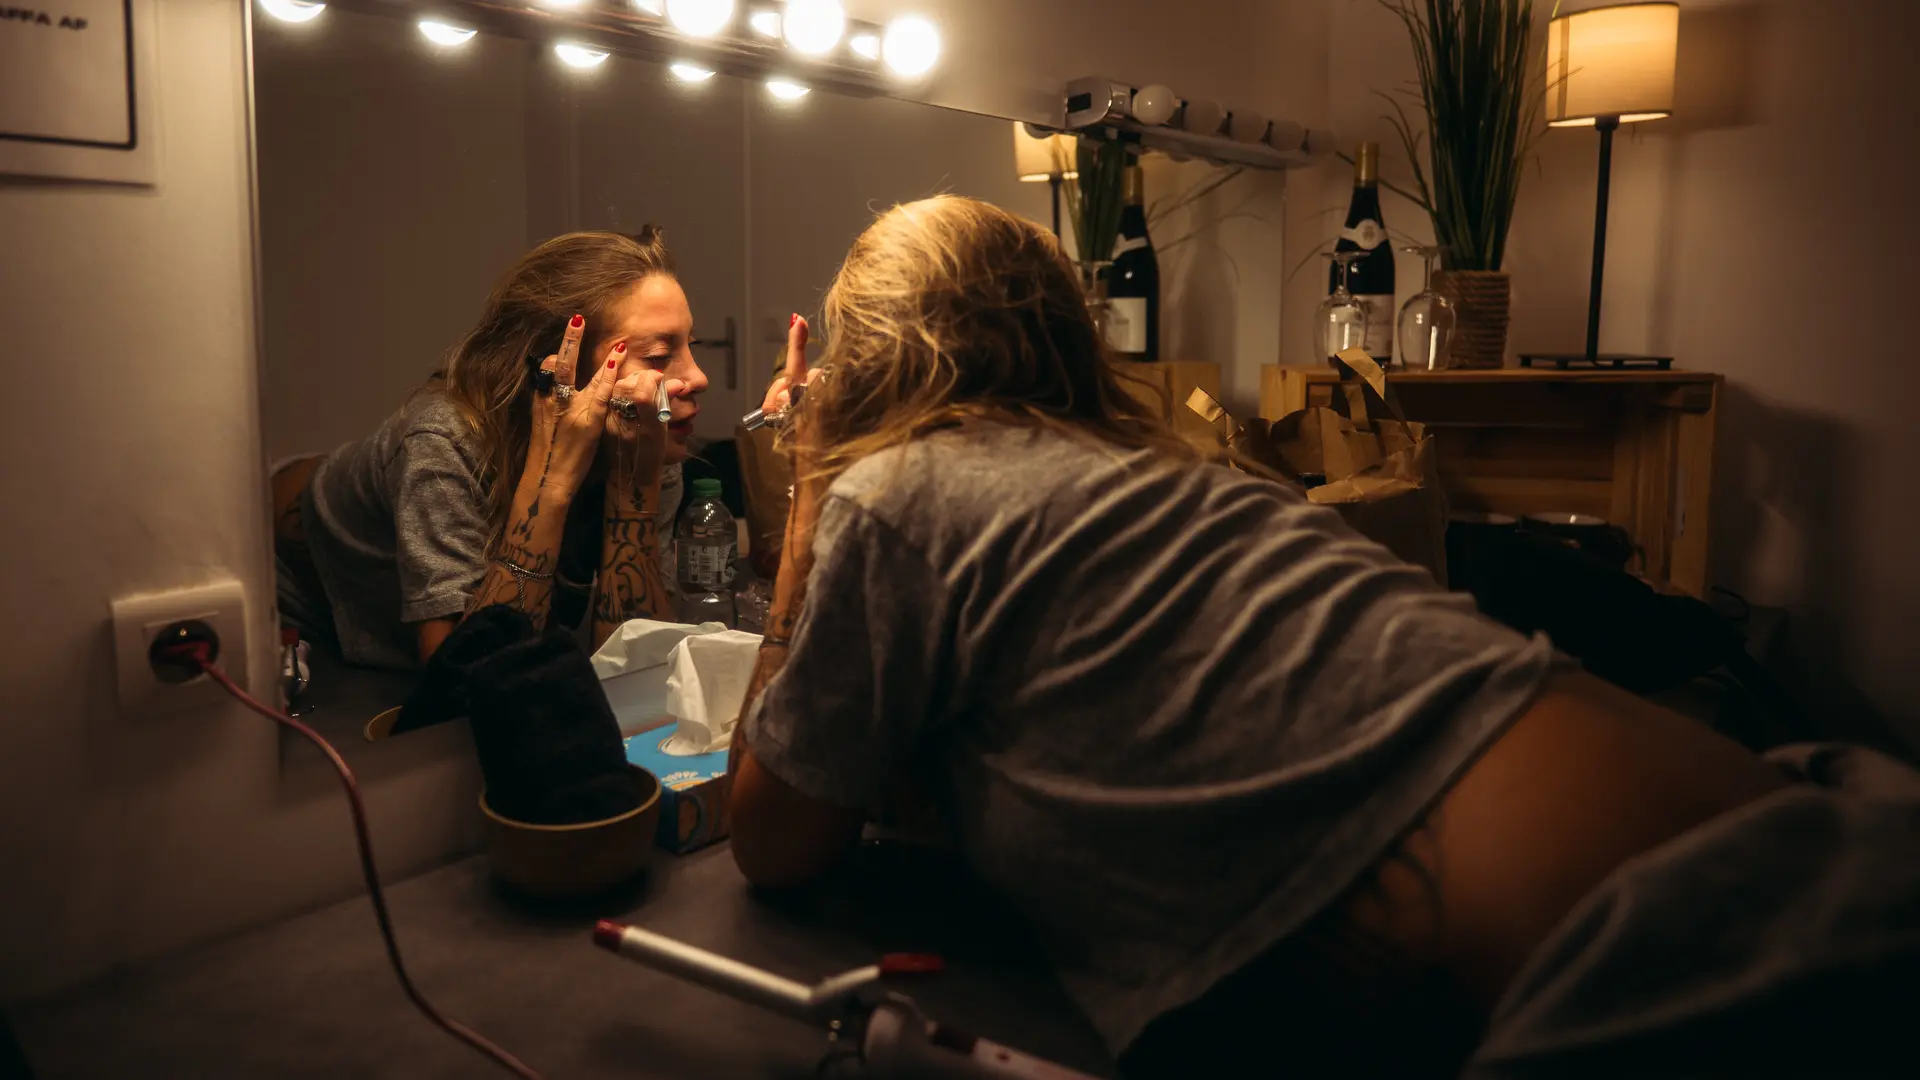 Femme qui se maquille dans un miroir - jyp-production - photographe strasbourg alsace